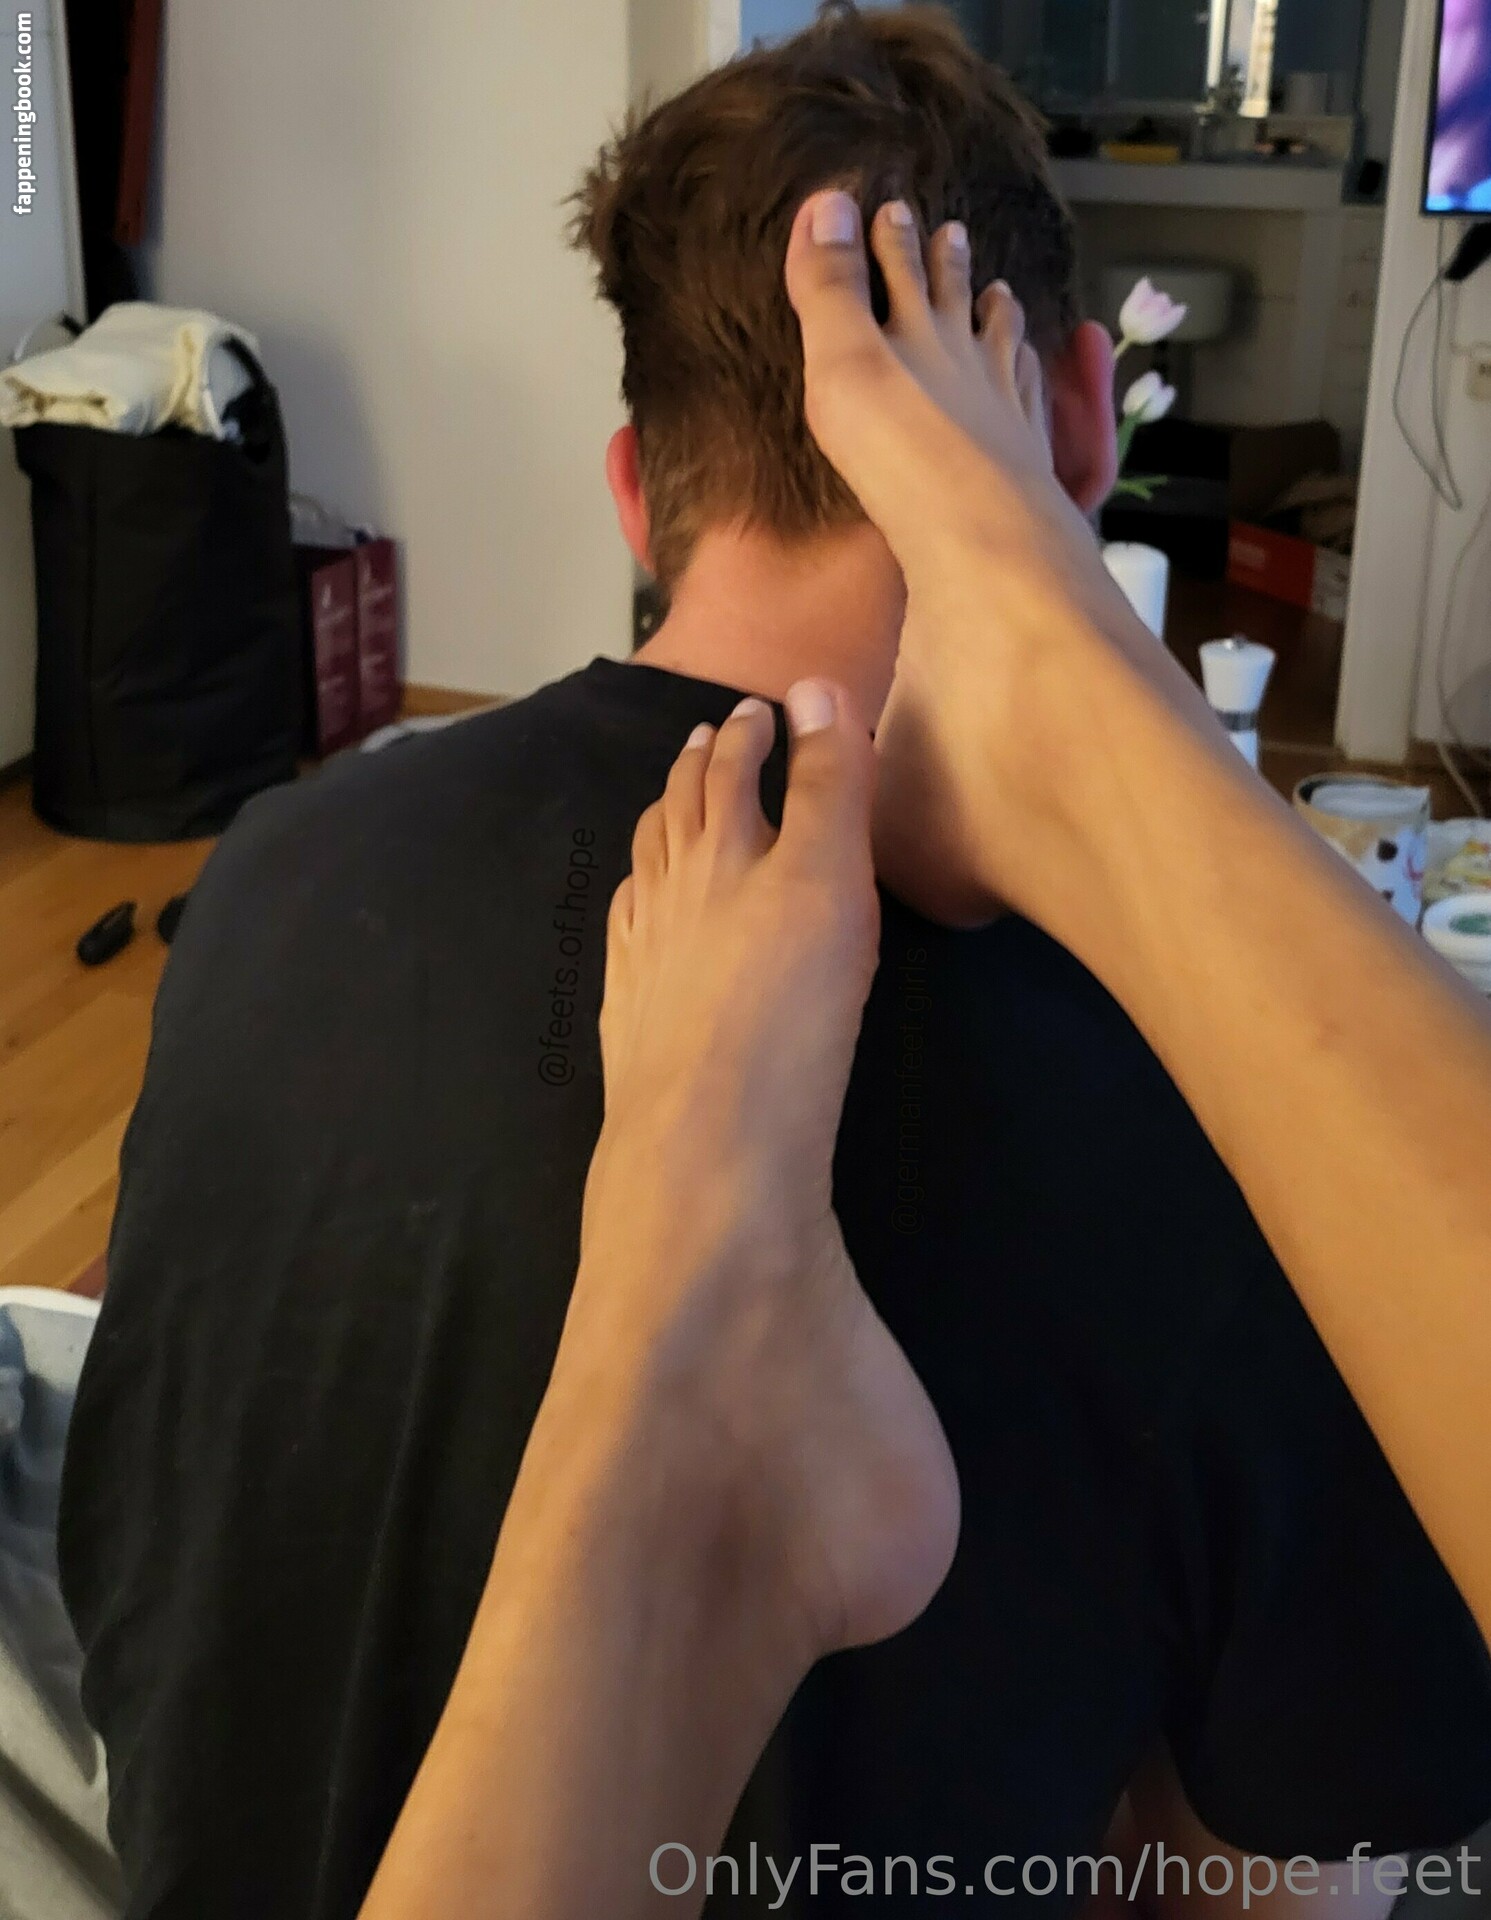 hope.feet Nude OnlyFans Leaks